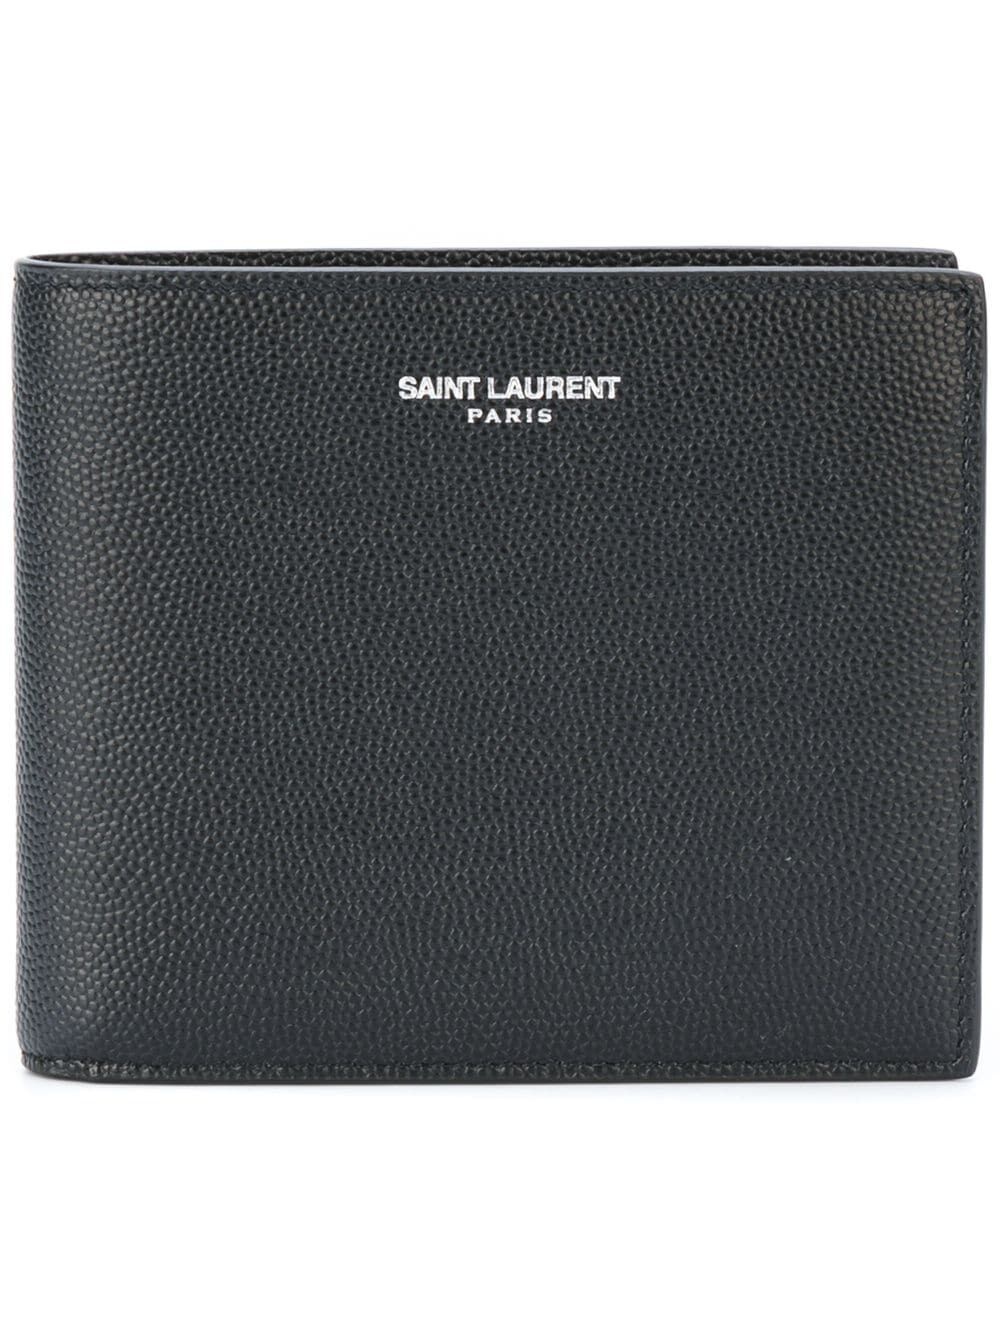 Saint laurent paris east/west wallet in textured leather - 1